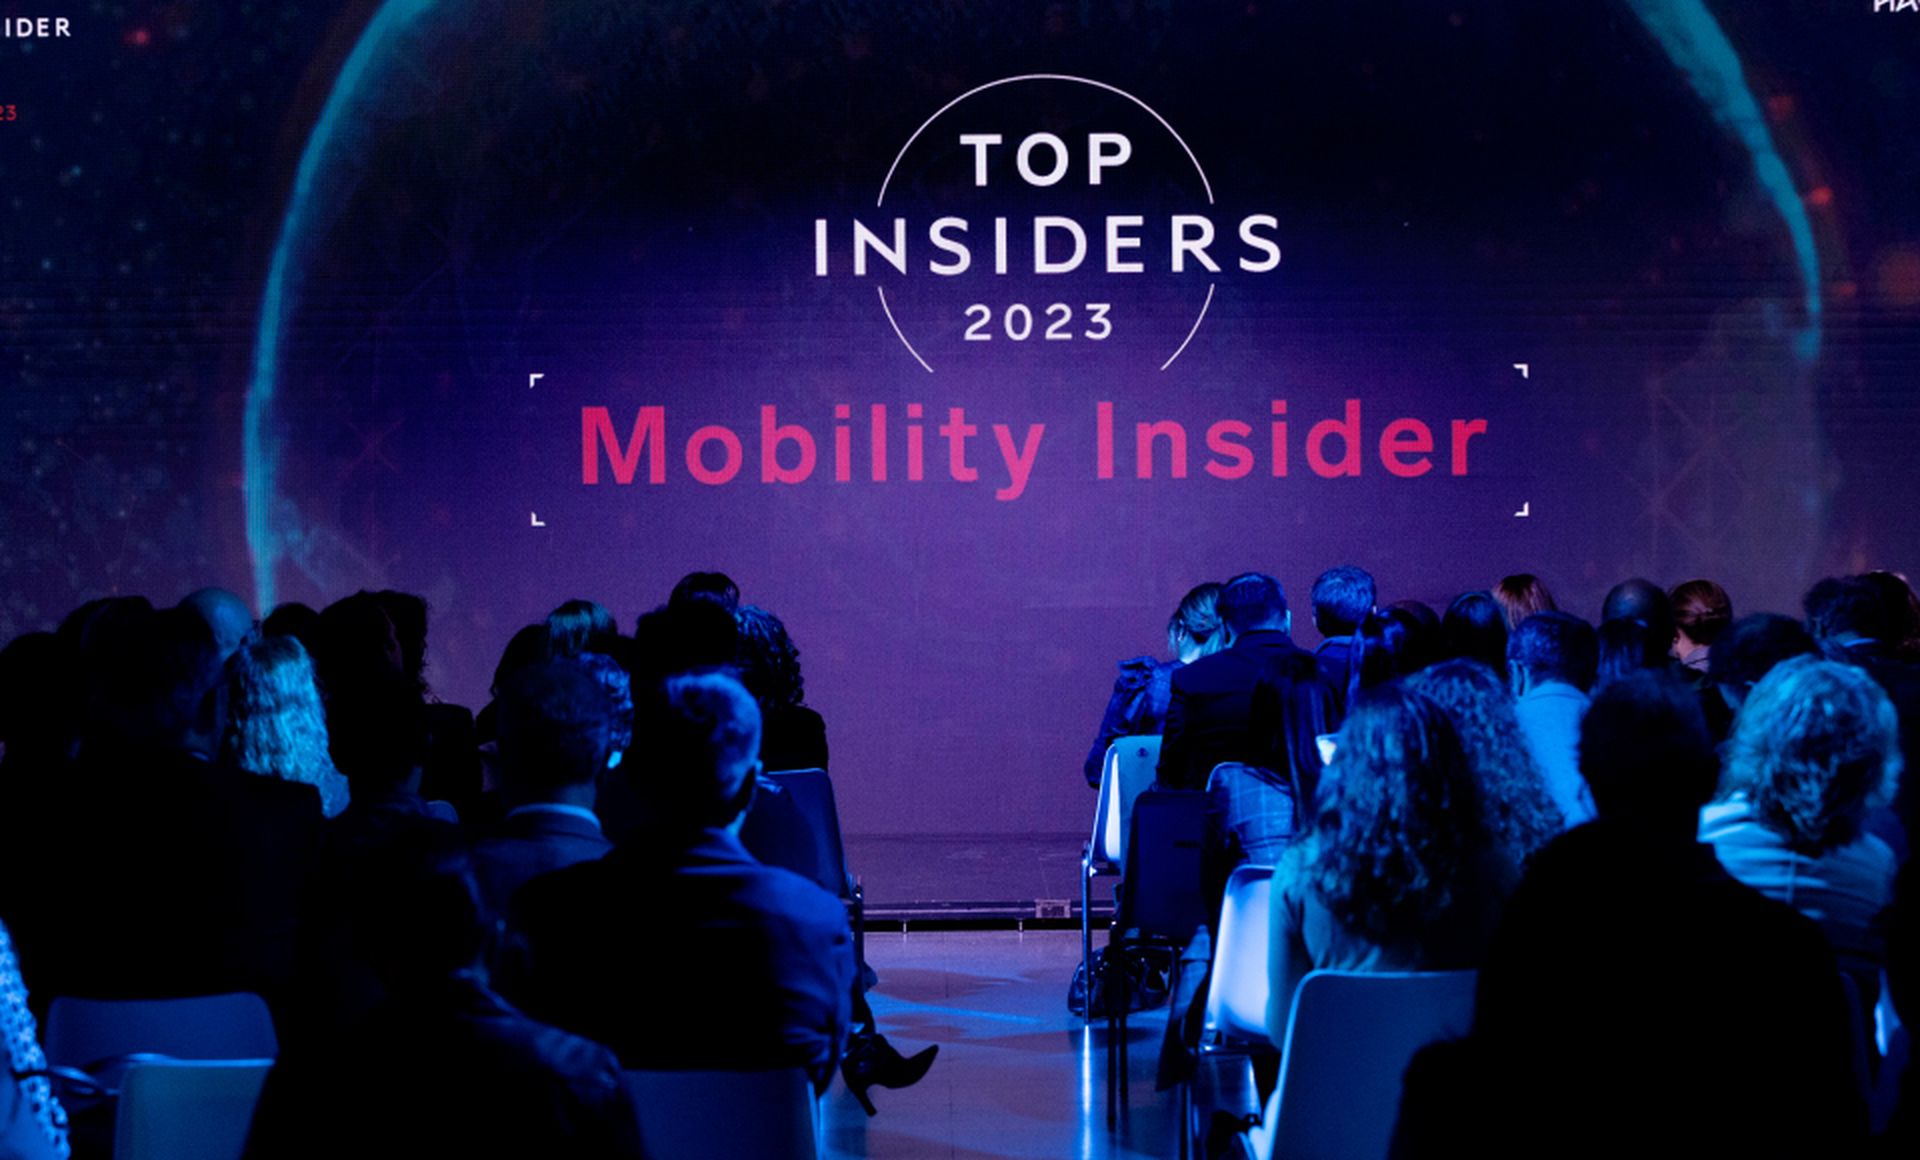 Mobility Insider fue una de las categorías del evento, en el que se repartieron 10 premios.